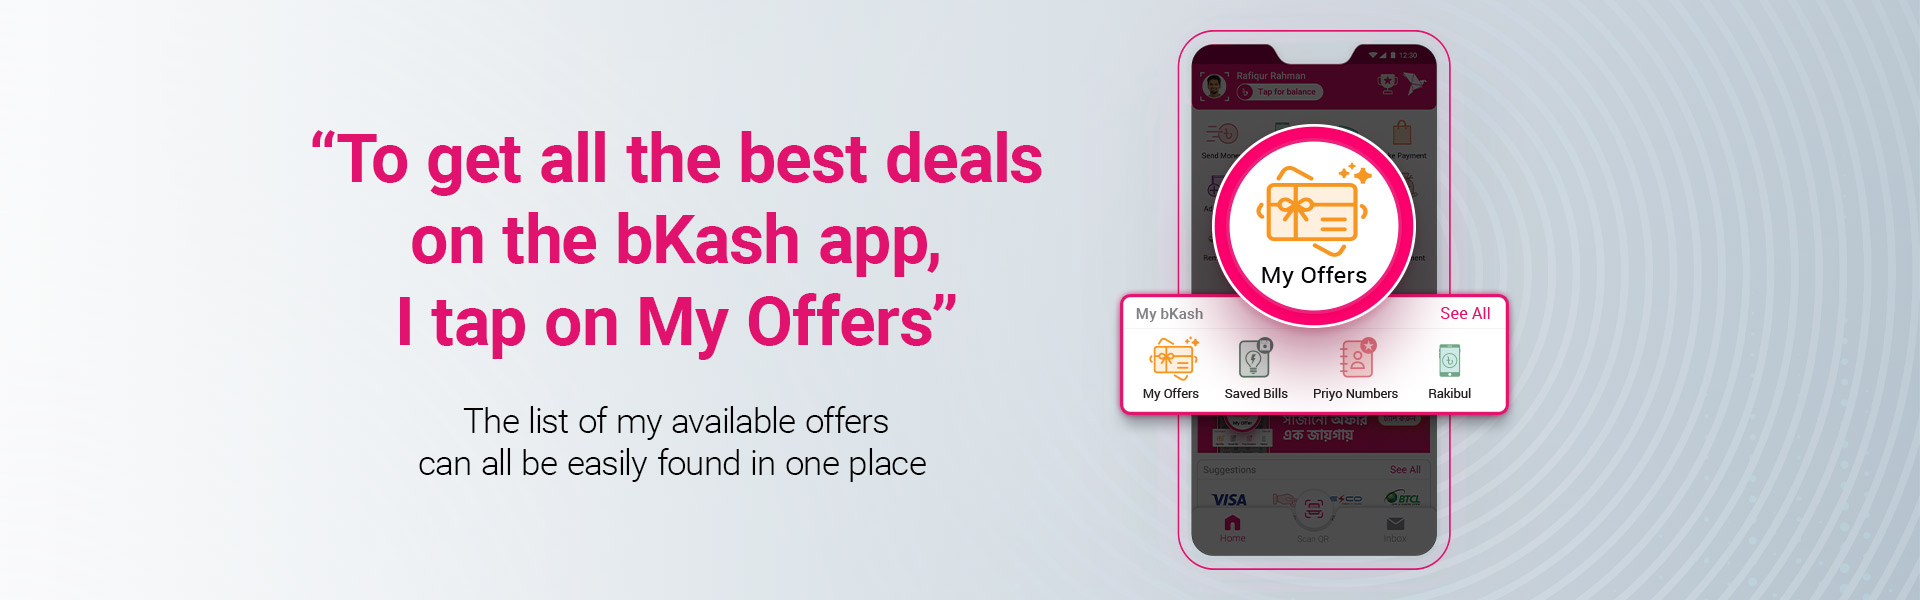 bkash app feature - desktop